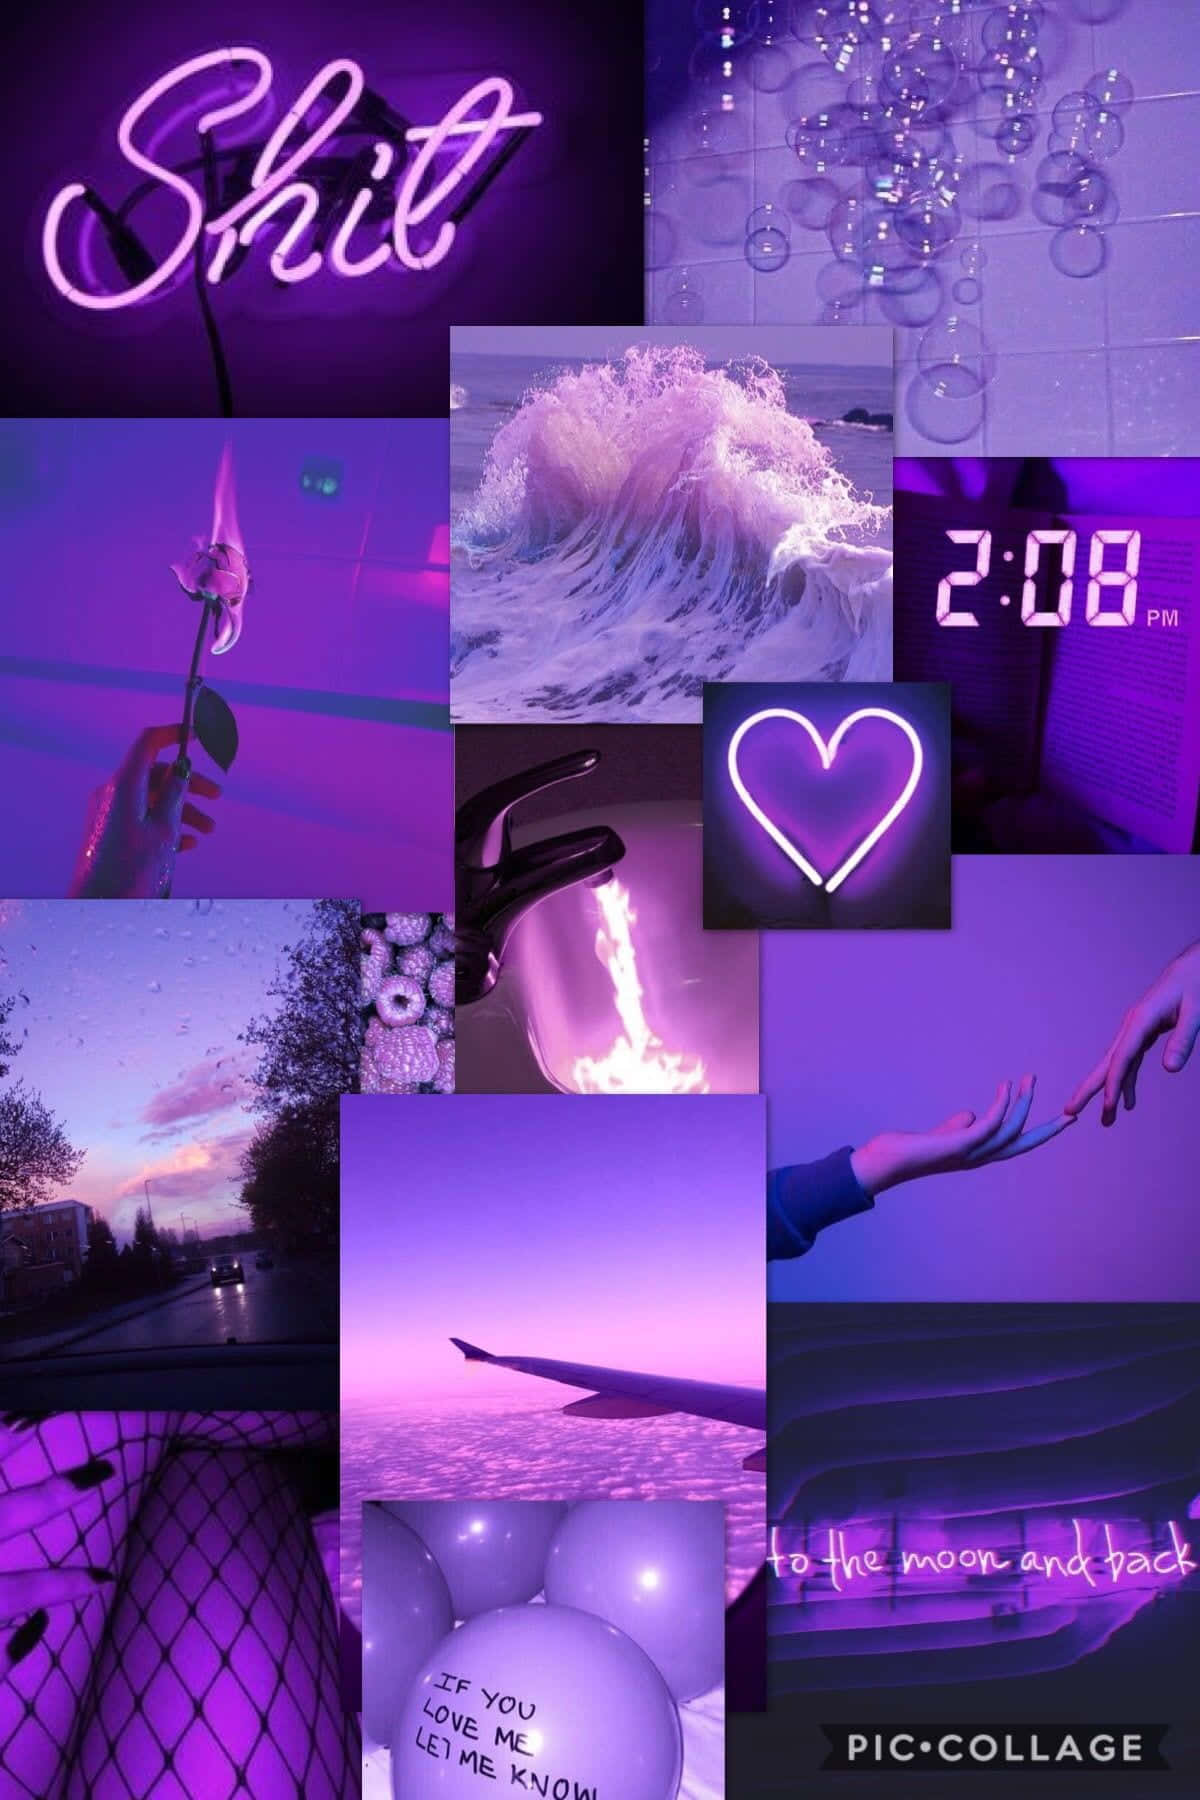 Einecollage Von Fotos Mit Violetten Lichtern Und Einer Uhr Wallpaper